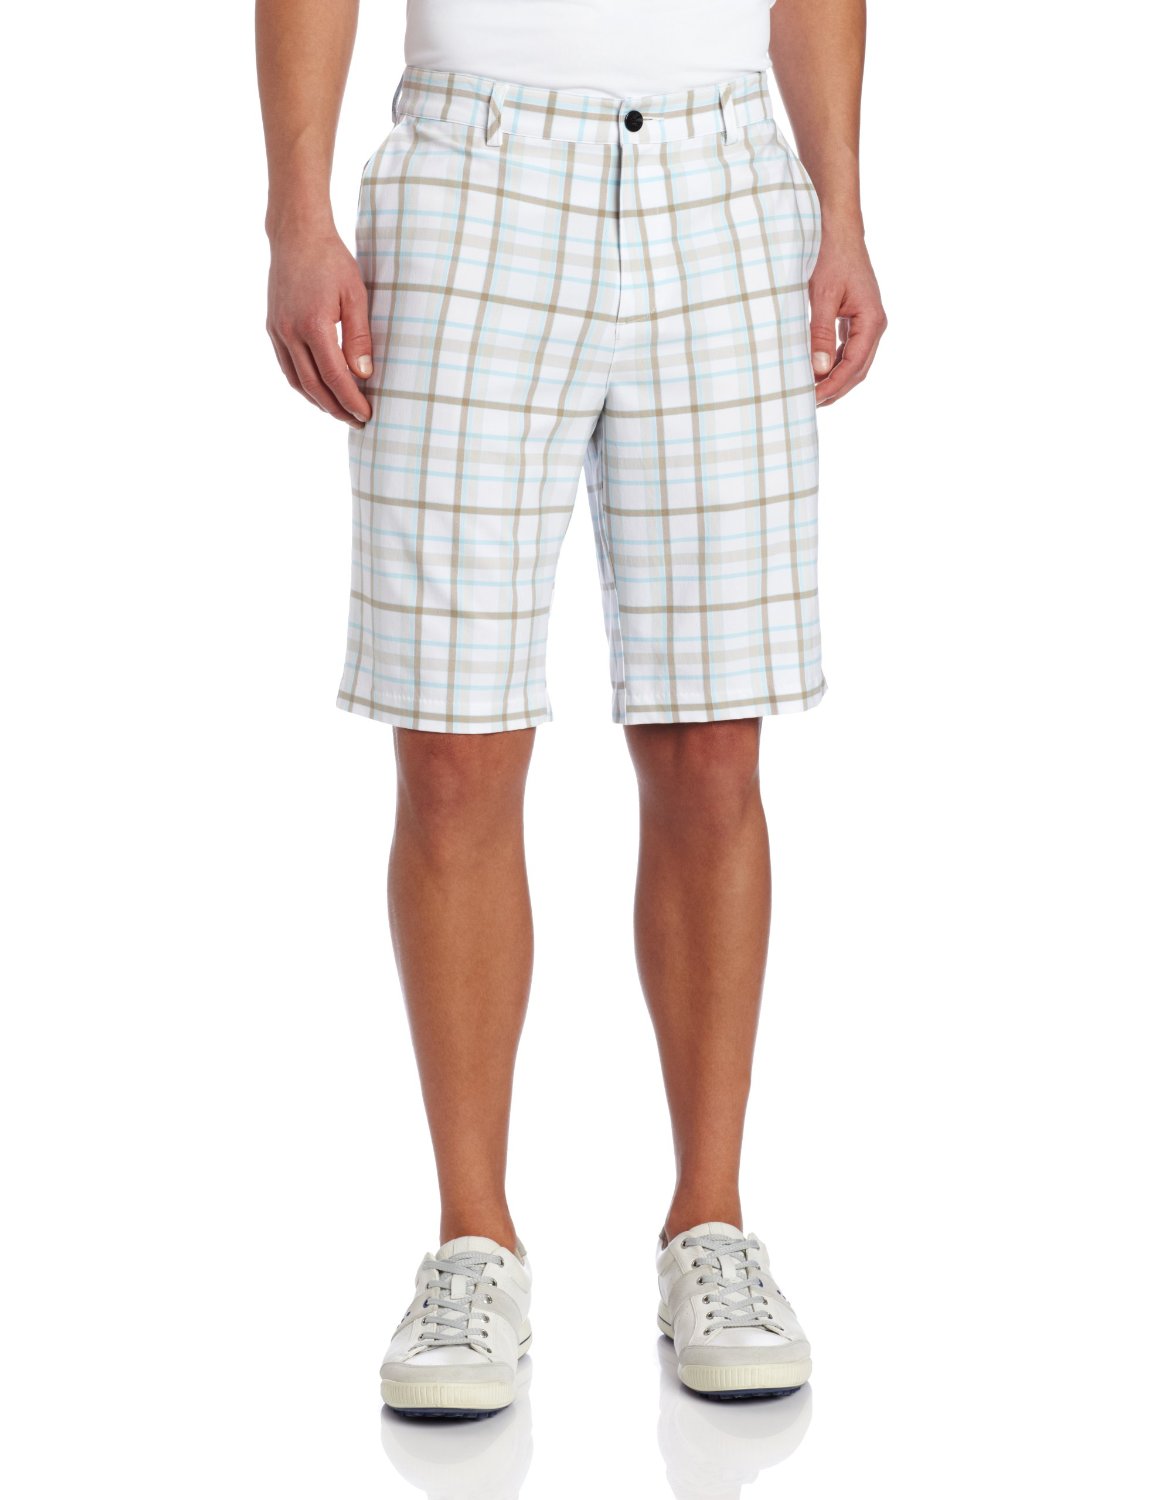 Adidas Climalite Fashion Plaid Golf Shorts